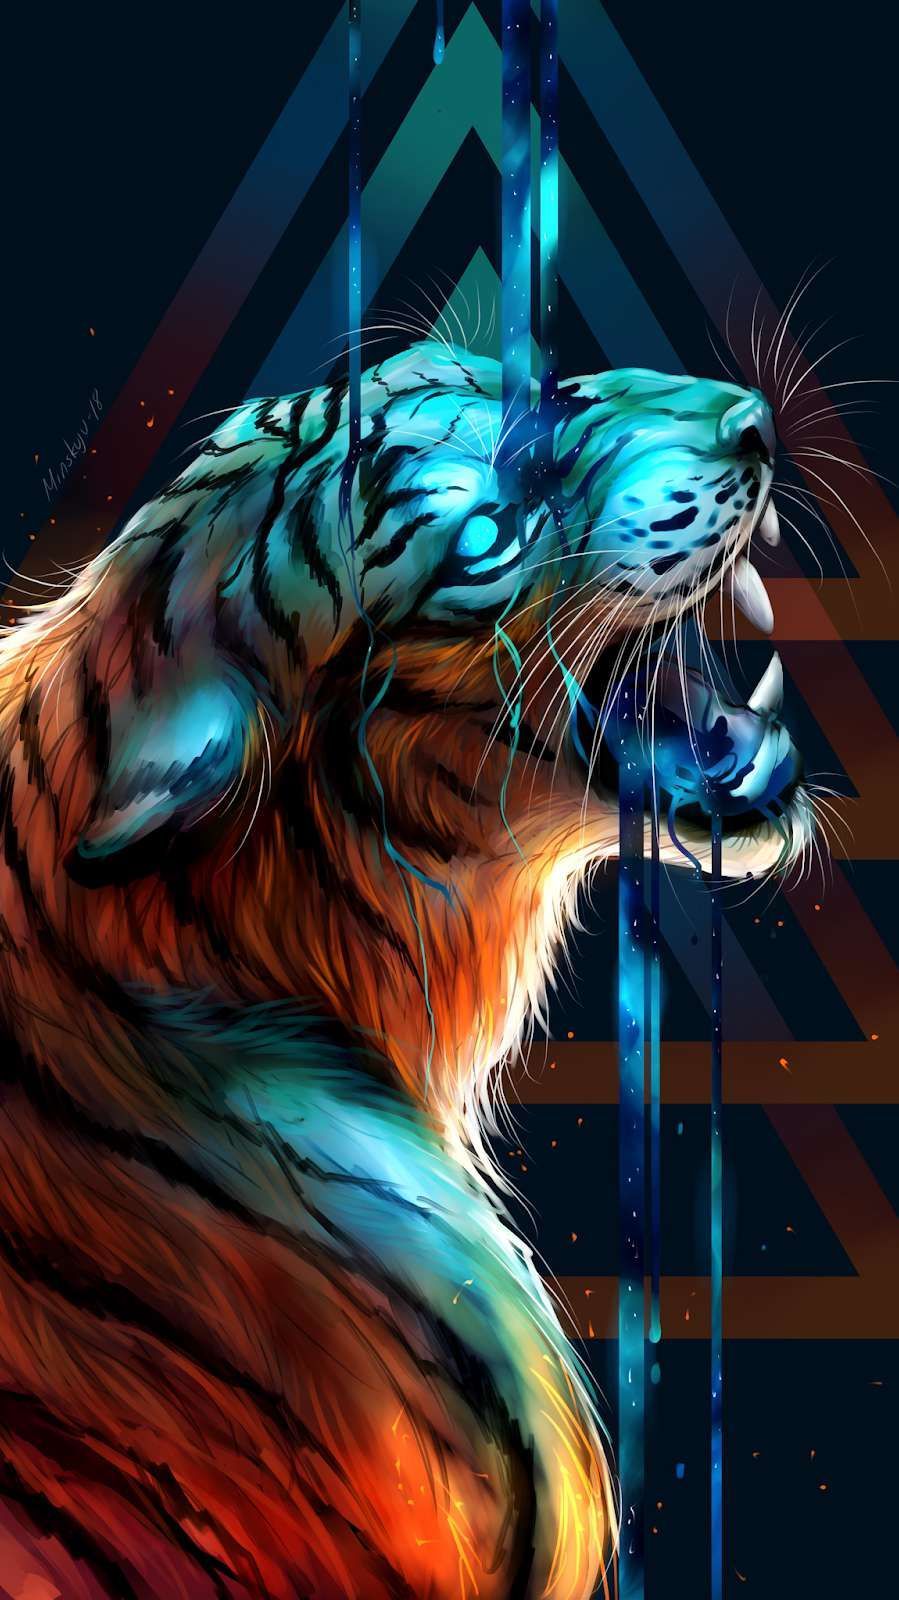 Bengal Tiger Art iPhone Wallpaper. Tiger art, Tiger artwork, Tiger wallpaper